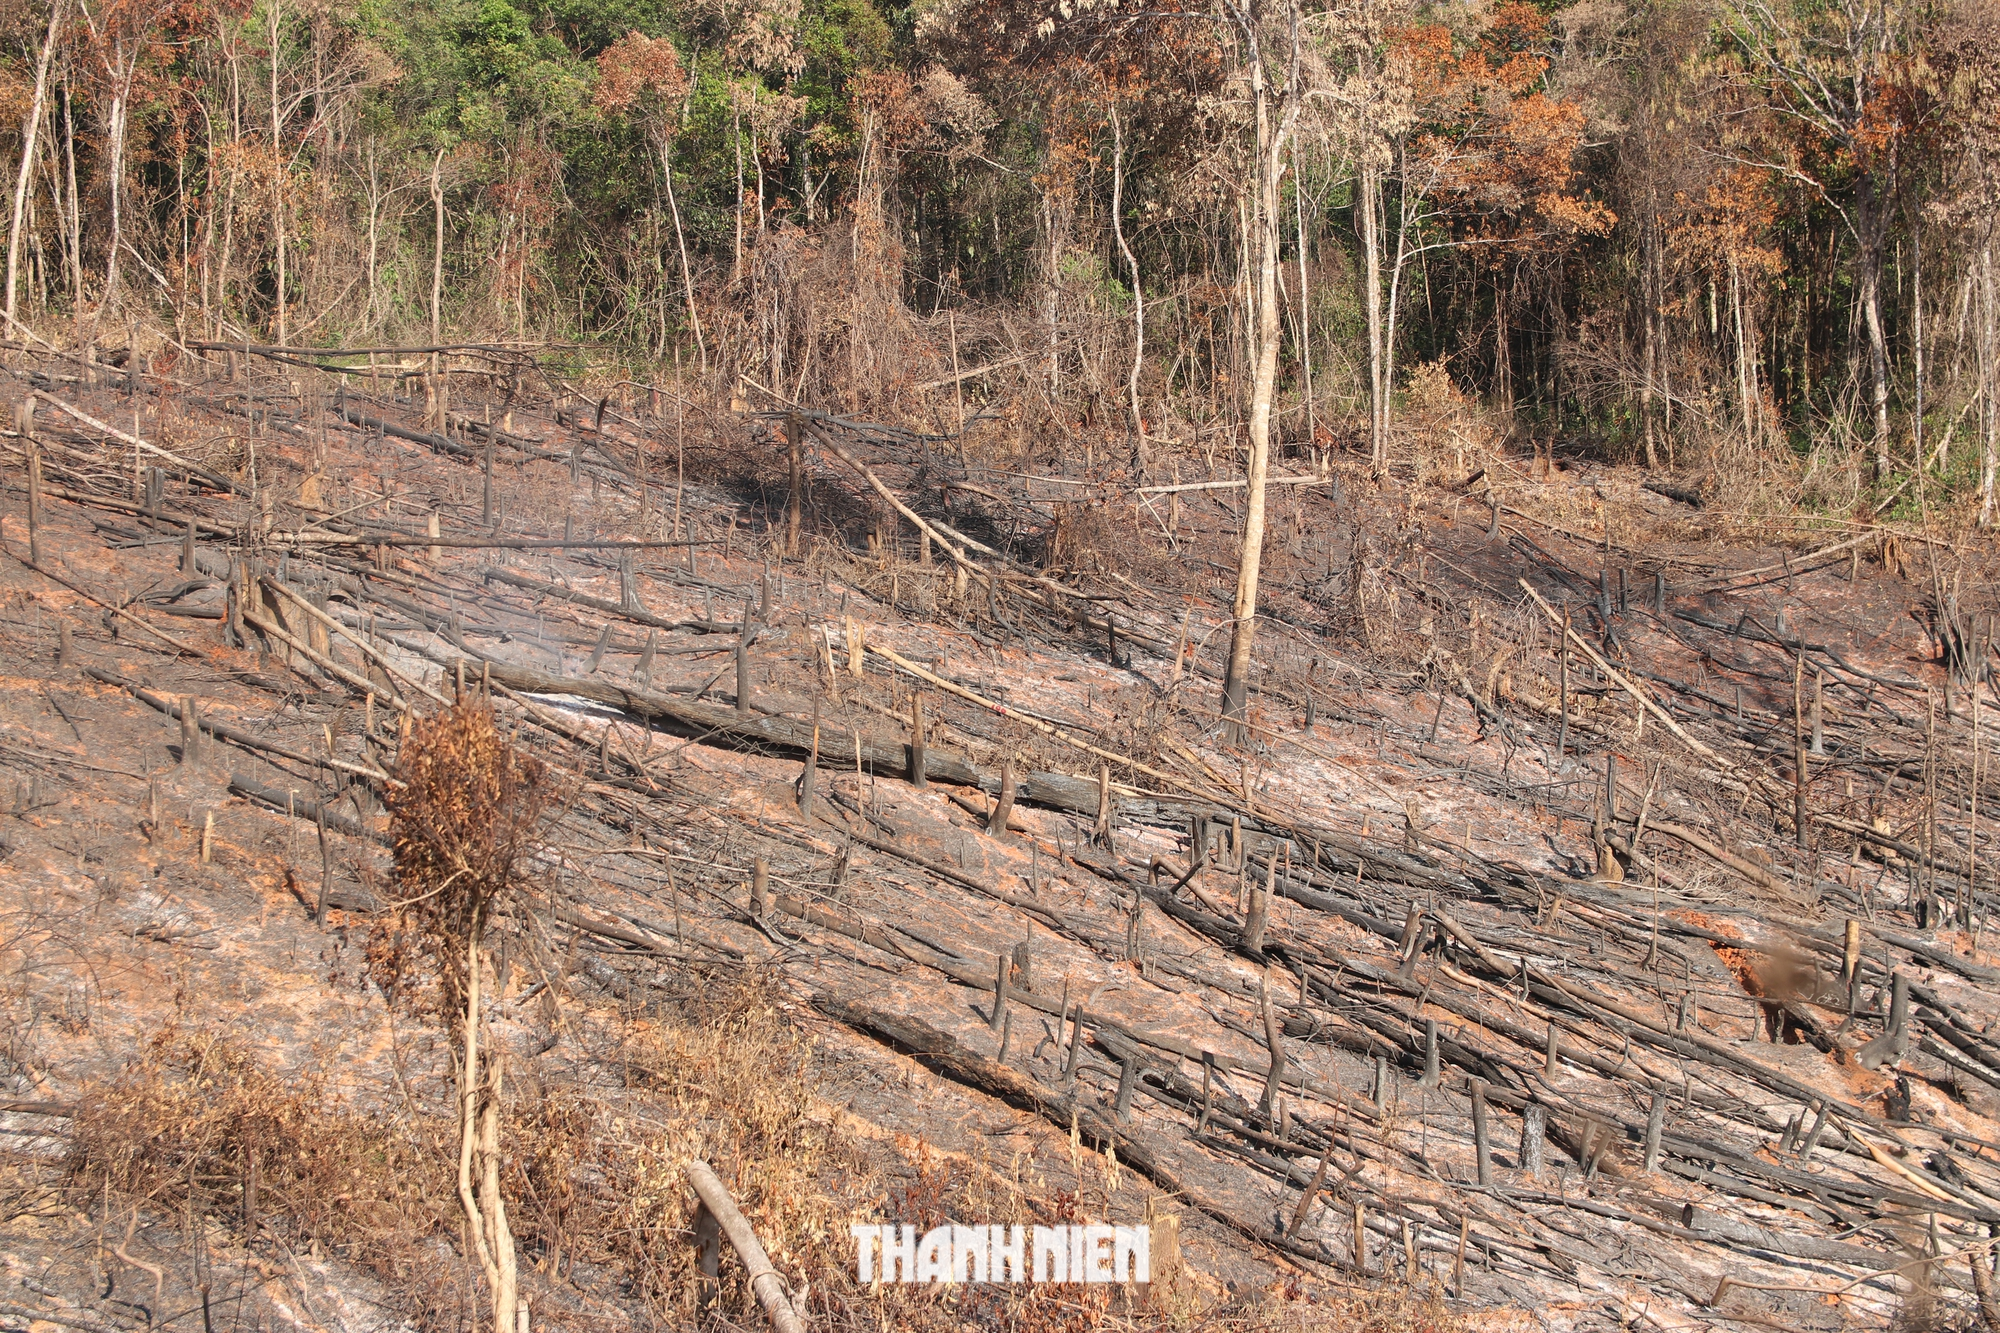 Lãnh đạo Đắk Nông kiểm tra khu vực chặt phá, đốt rừng mà Thanh Niên phản ánh - Ảnh 4.